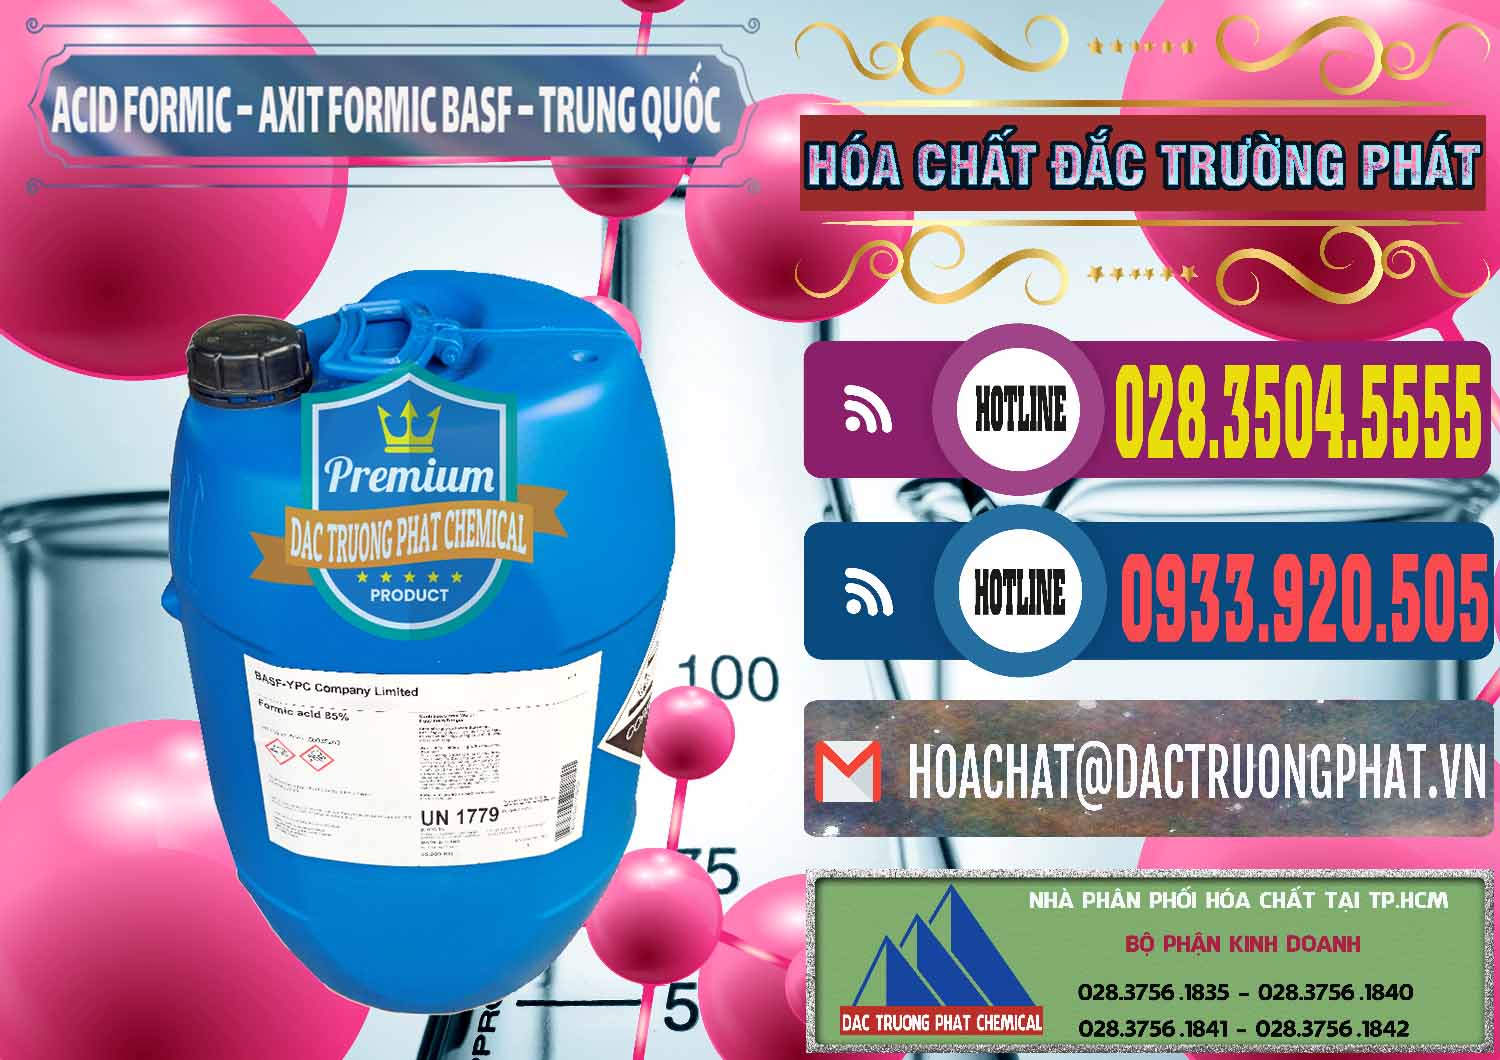 Cty cung cấp và bán Acid Formic - Axit Formic BASF Trung Quốc China - 0025 - Nơi chuyên kinh doanh ( phân phối ) hóa chất tại TP.HCM - muabanhoachat.com.vn